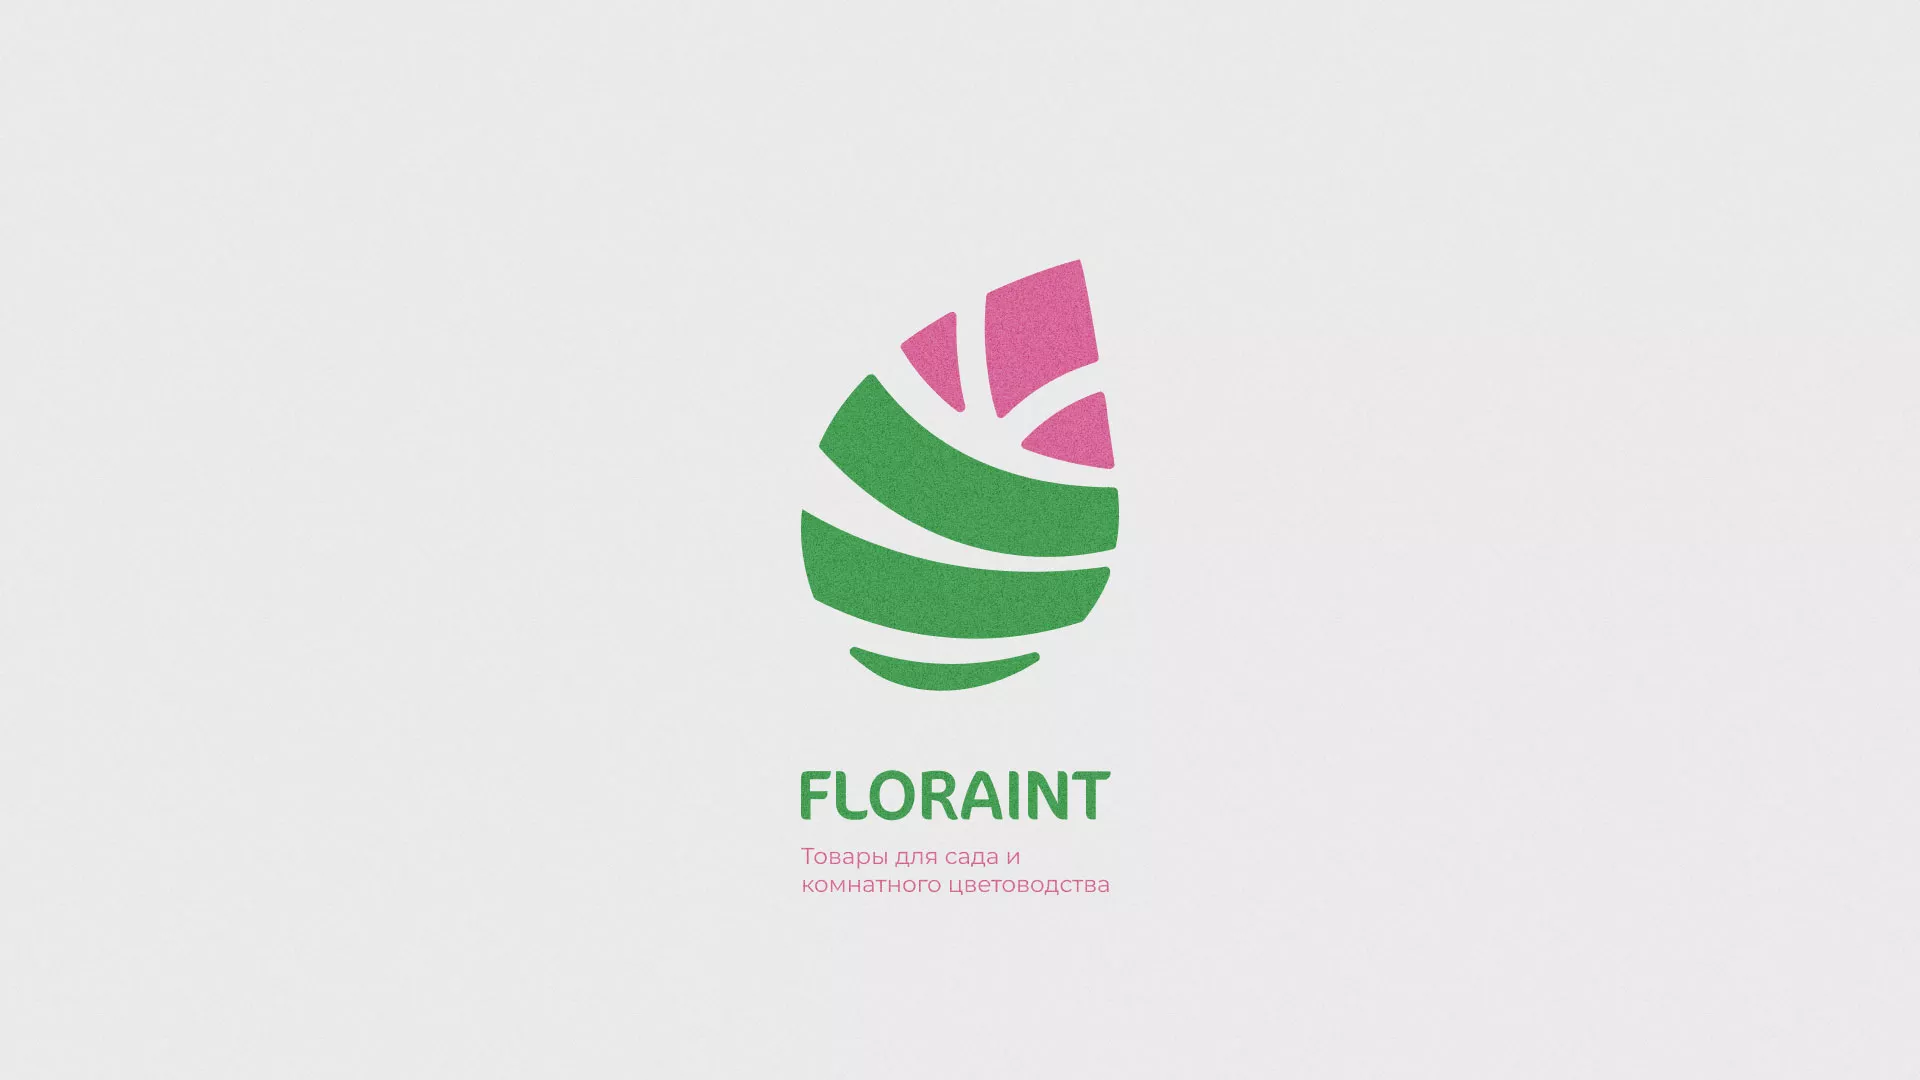 Разработка оформления профиля Instagram для магазина «Floraint» в Тольятти